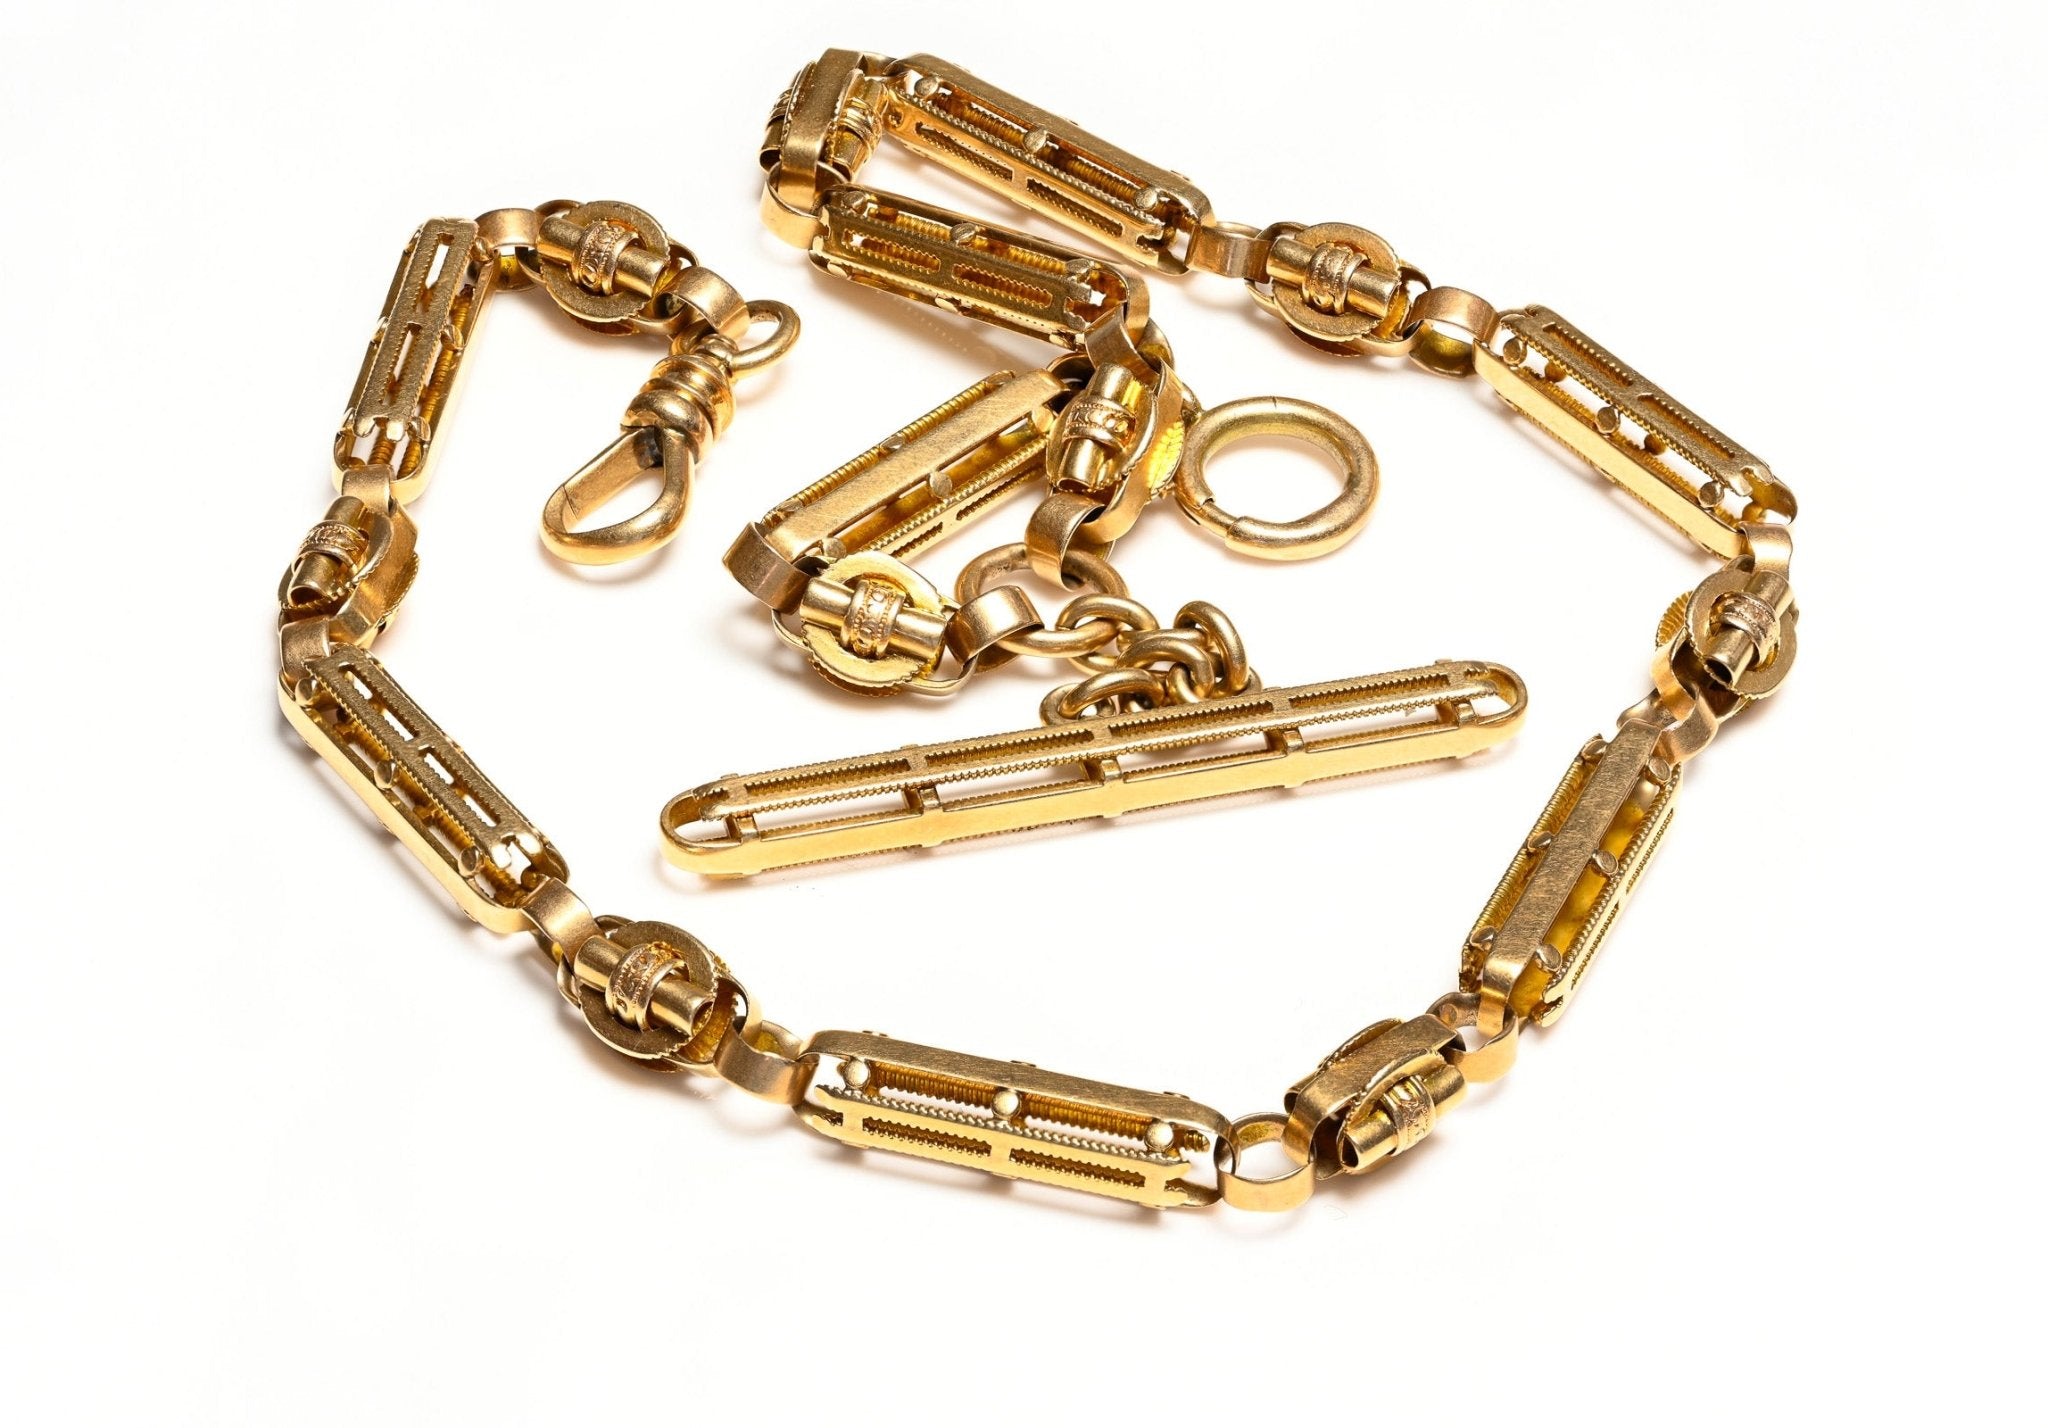 Antique Gold Pocket Watch Chain